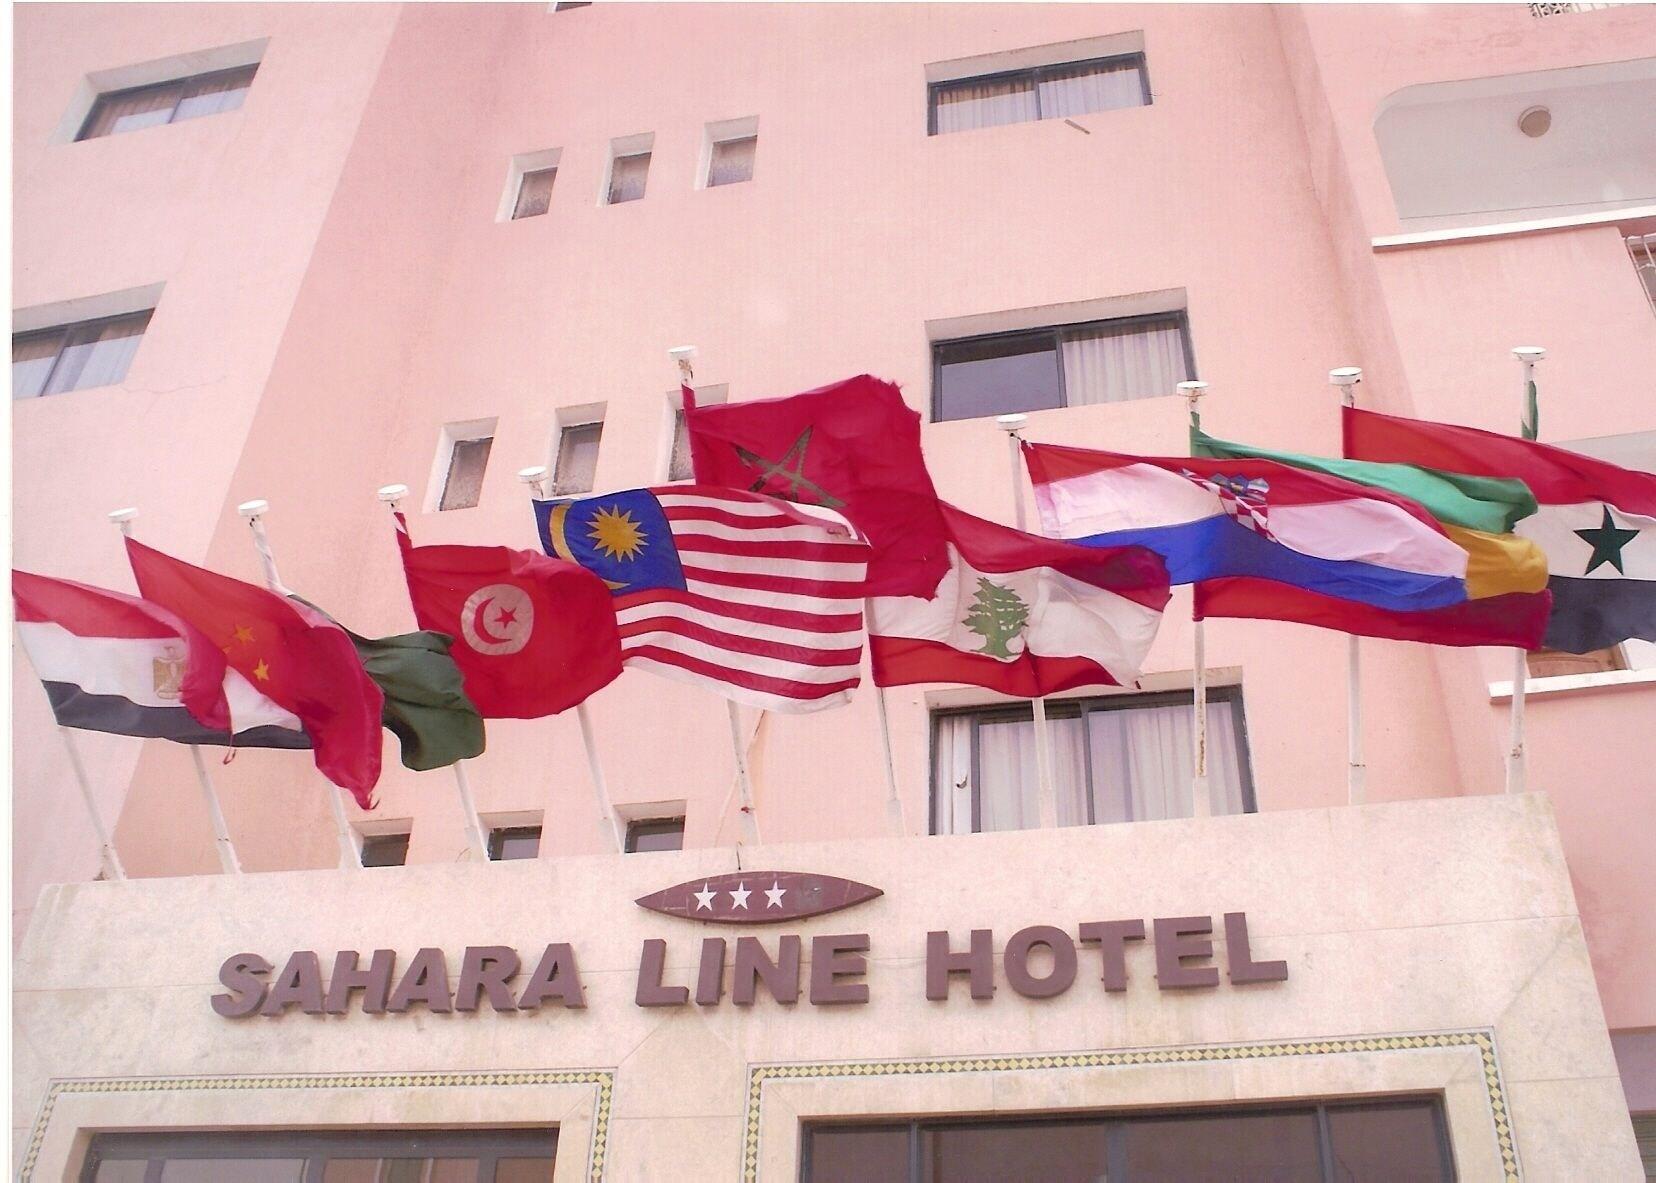 Variados (as) Sahara Line Hotel